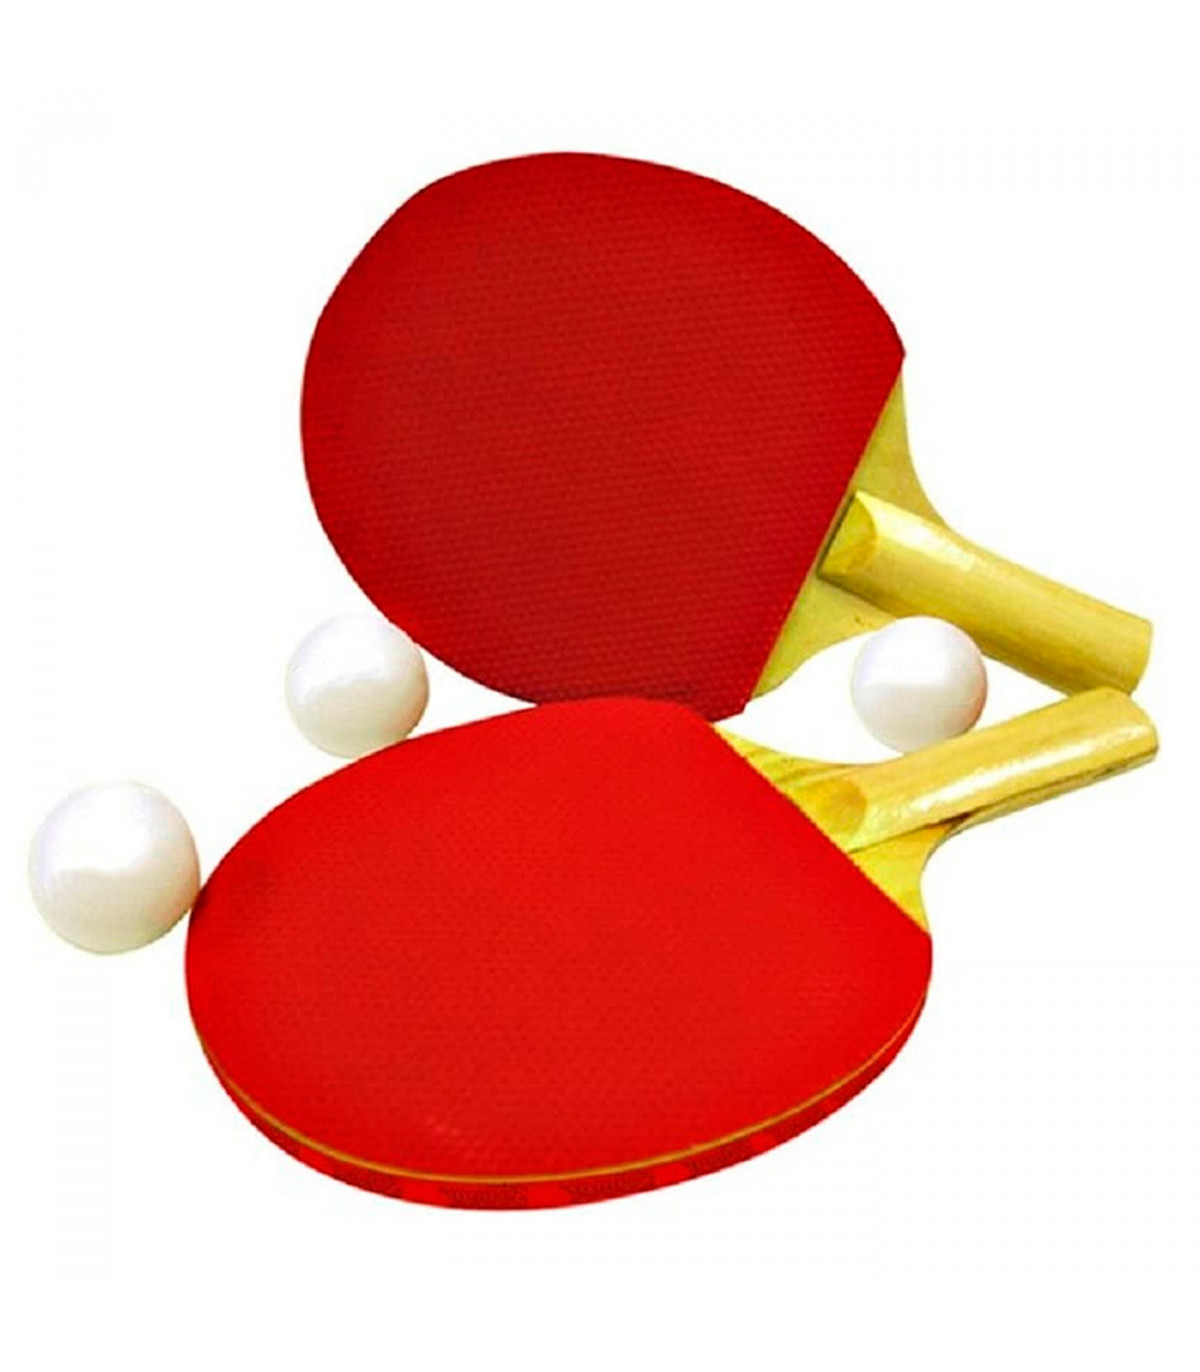 Raquetas de Ping Pong - Palas de Ping Pong